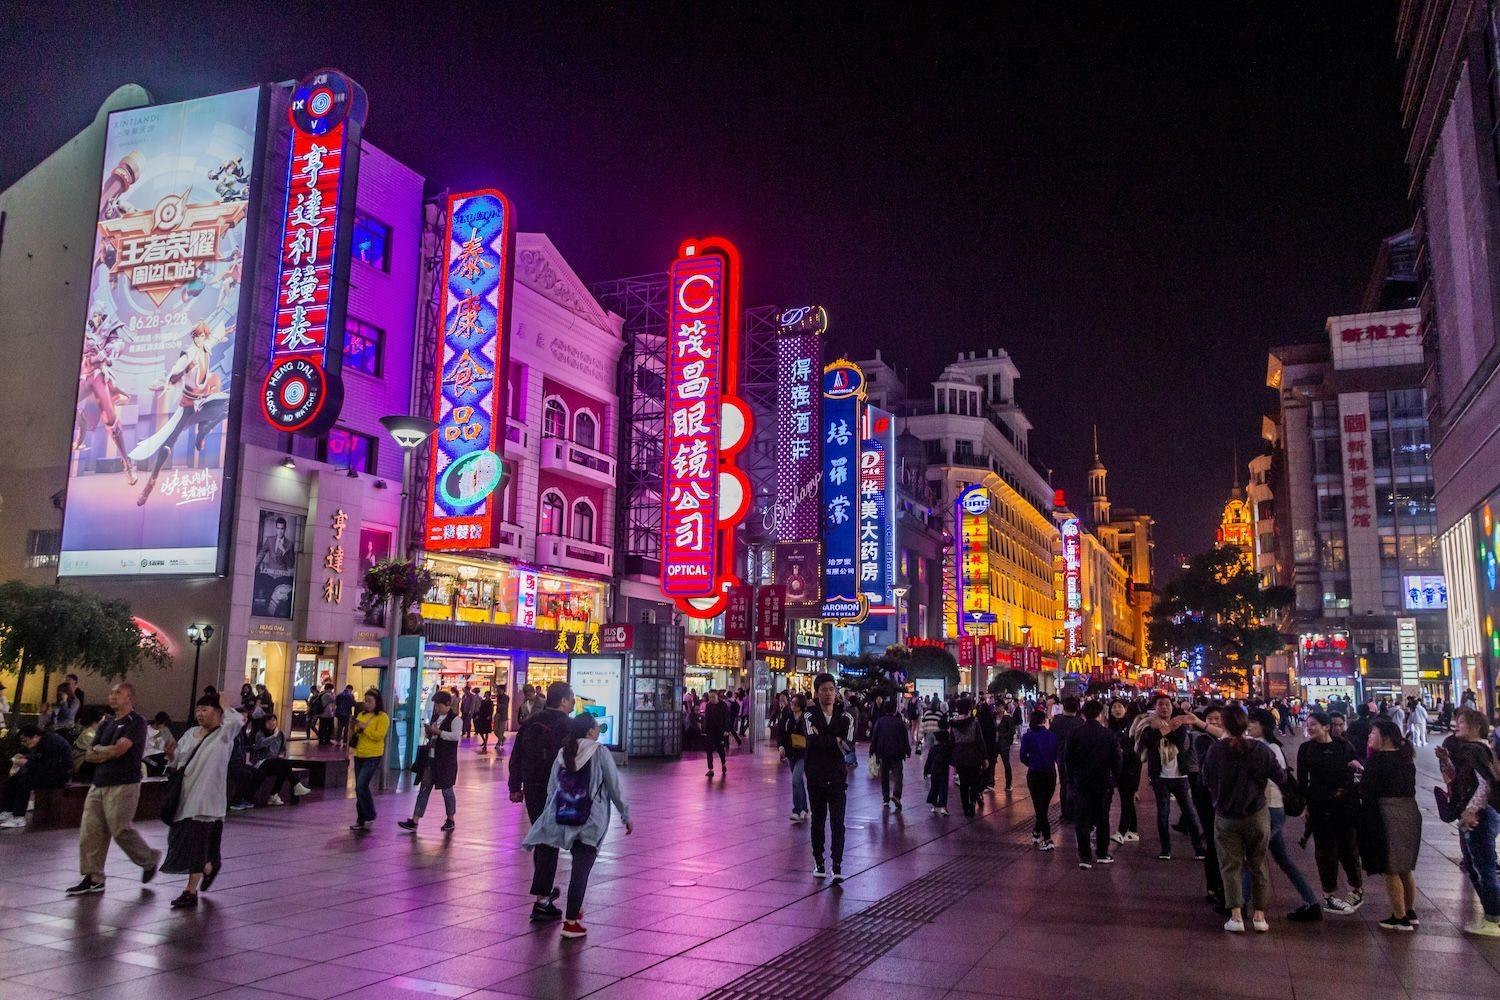 China News, Nachrichten, Aktuelles, Wirtschaft, Reise, Reisen, Travel: Nachtansicht der Fußgängerzone Nanjing Road in Shanghai, China